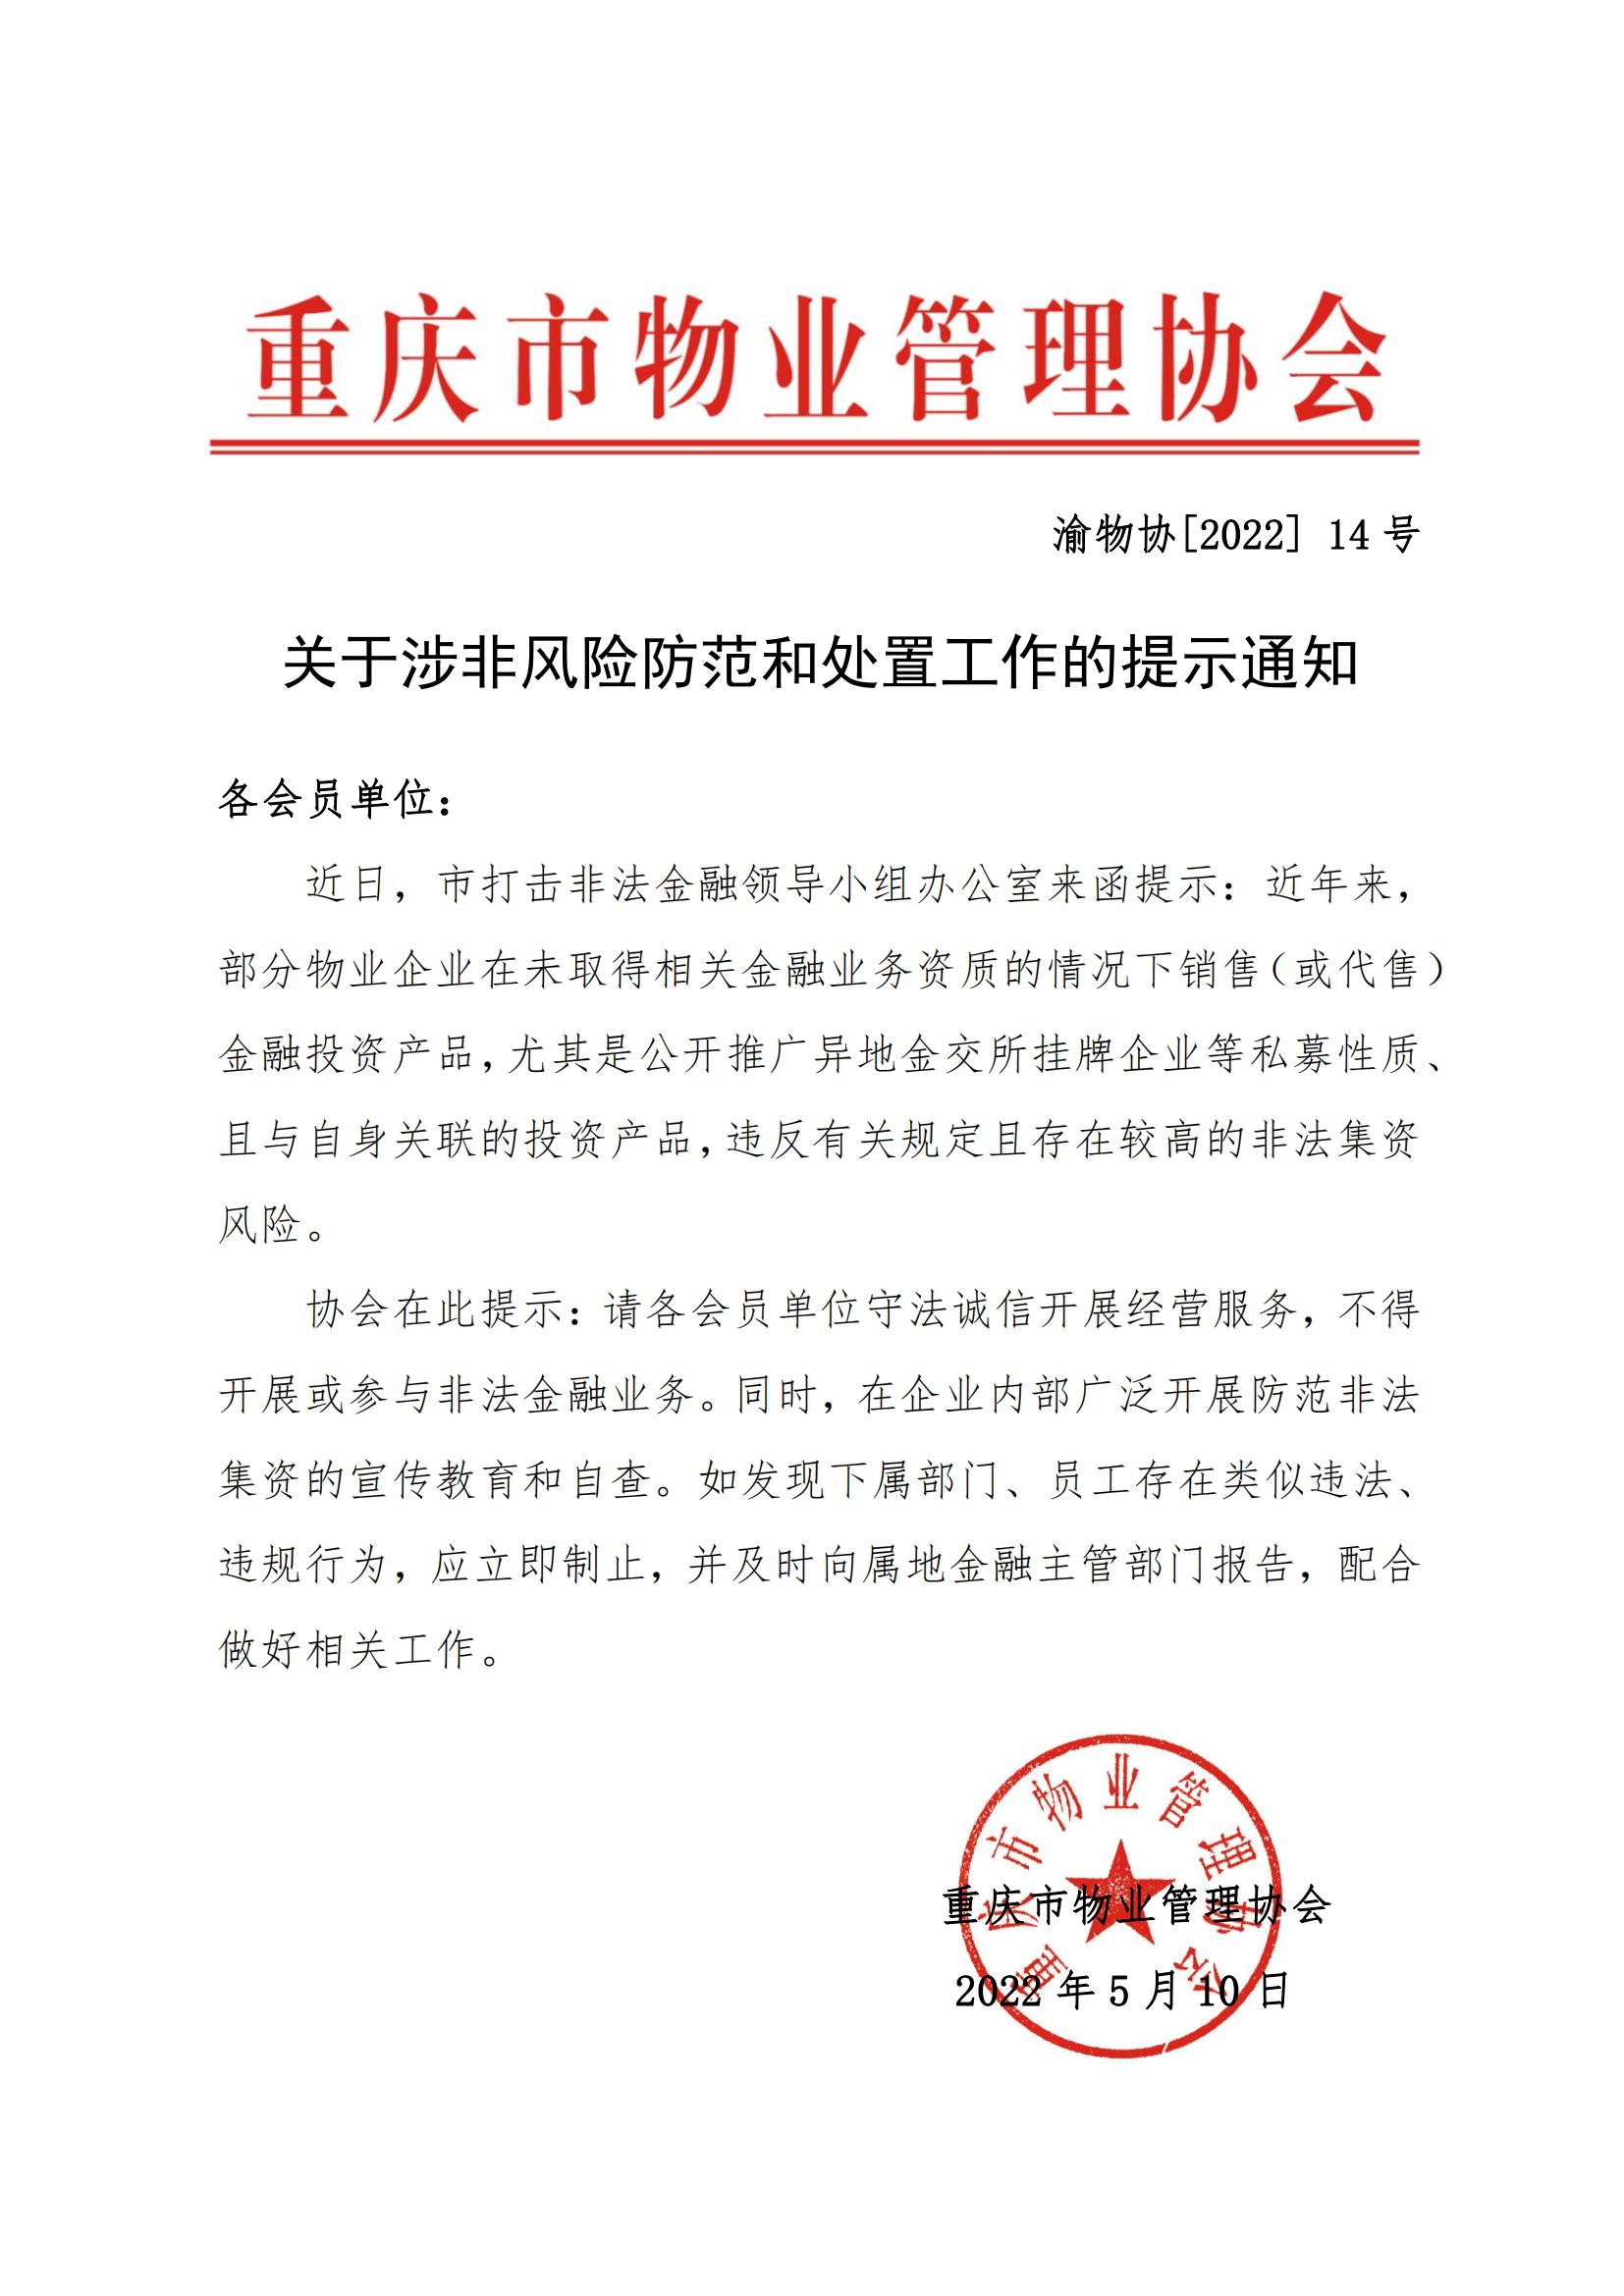 渝物协[2022]14号 重庆市物业管理协会关于涉非风险防范和处置工作的提示通知_00.jpg